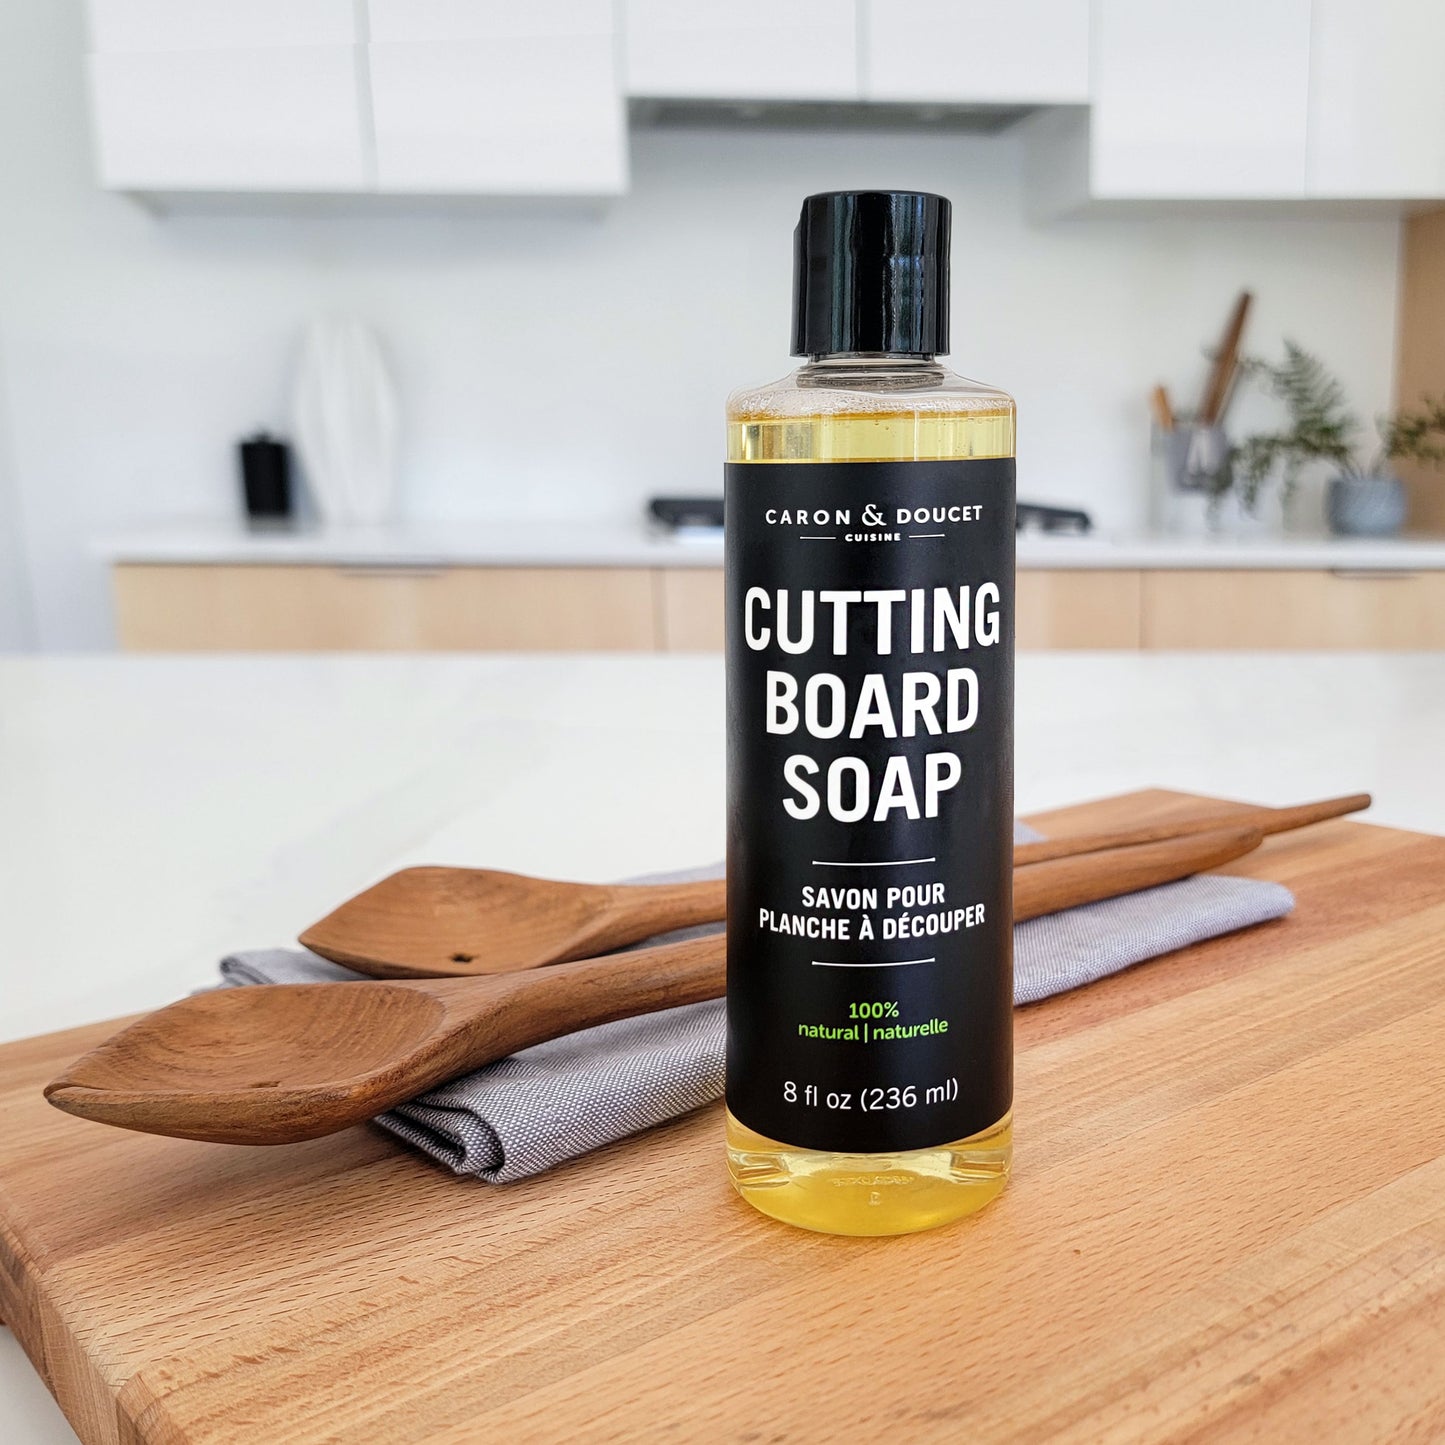 Cutting Board Soap, 8oz